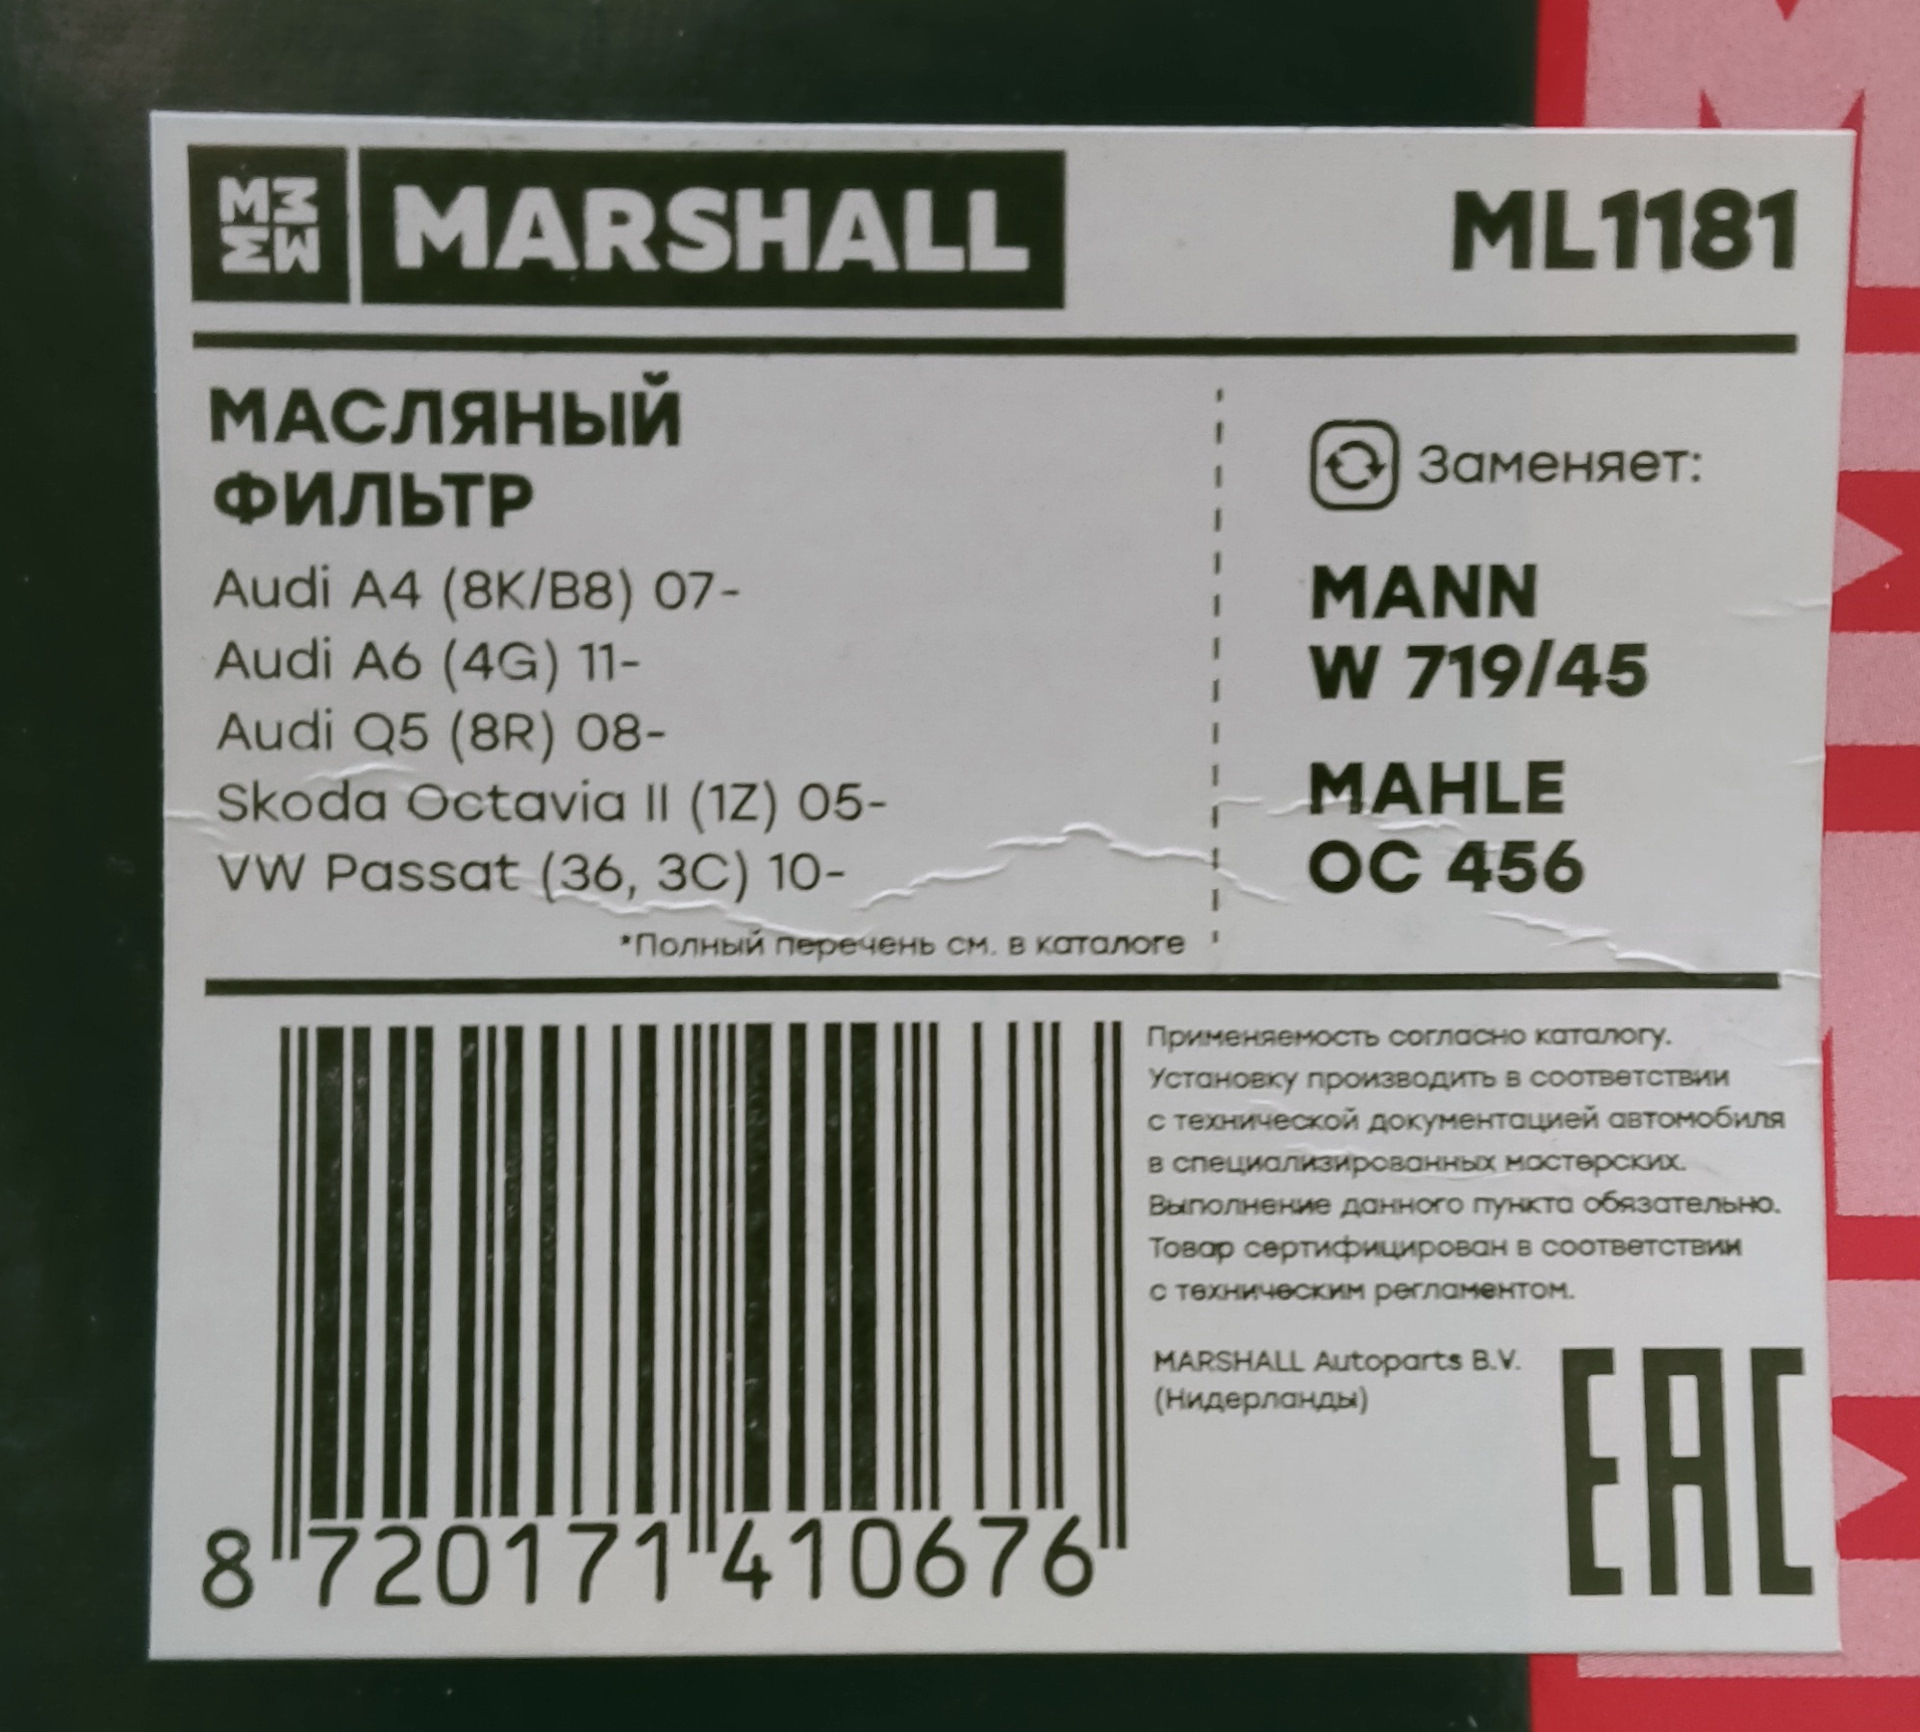 Производитель запчастей маршал. Marshall фильтр масляный. Ml1181. Фильтр масляный Marshall ml8996. Распил масляного фильтра Маршал.